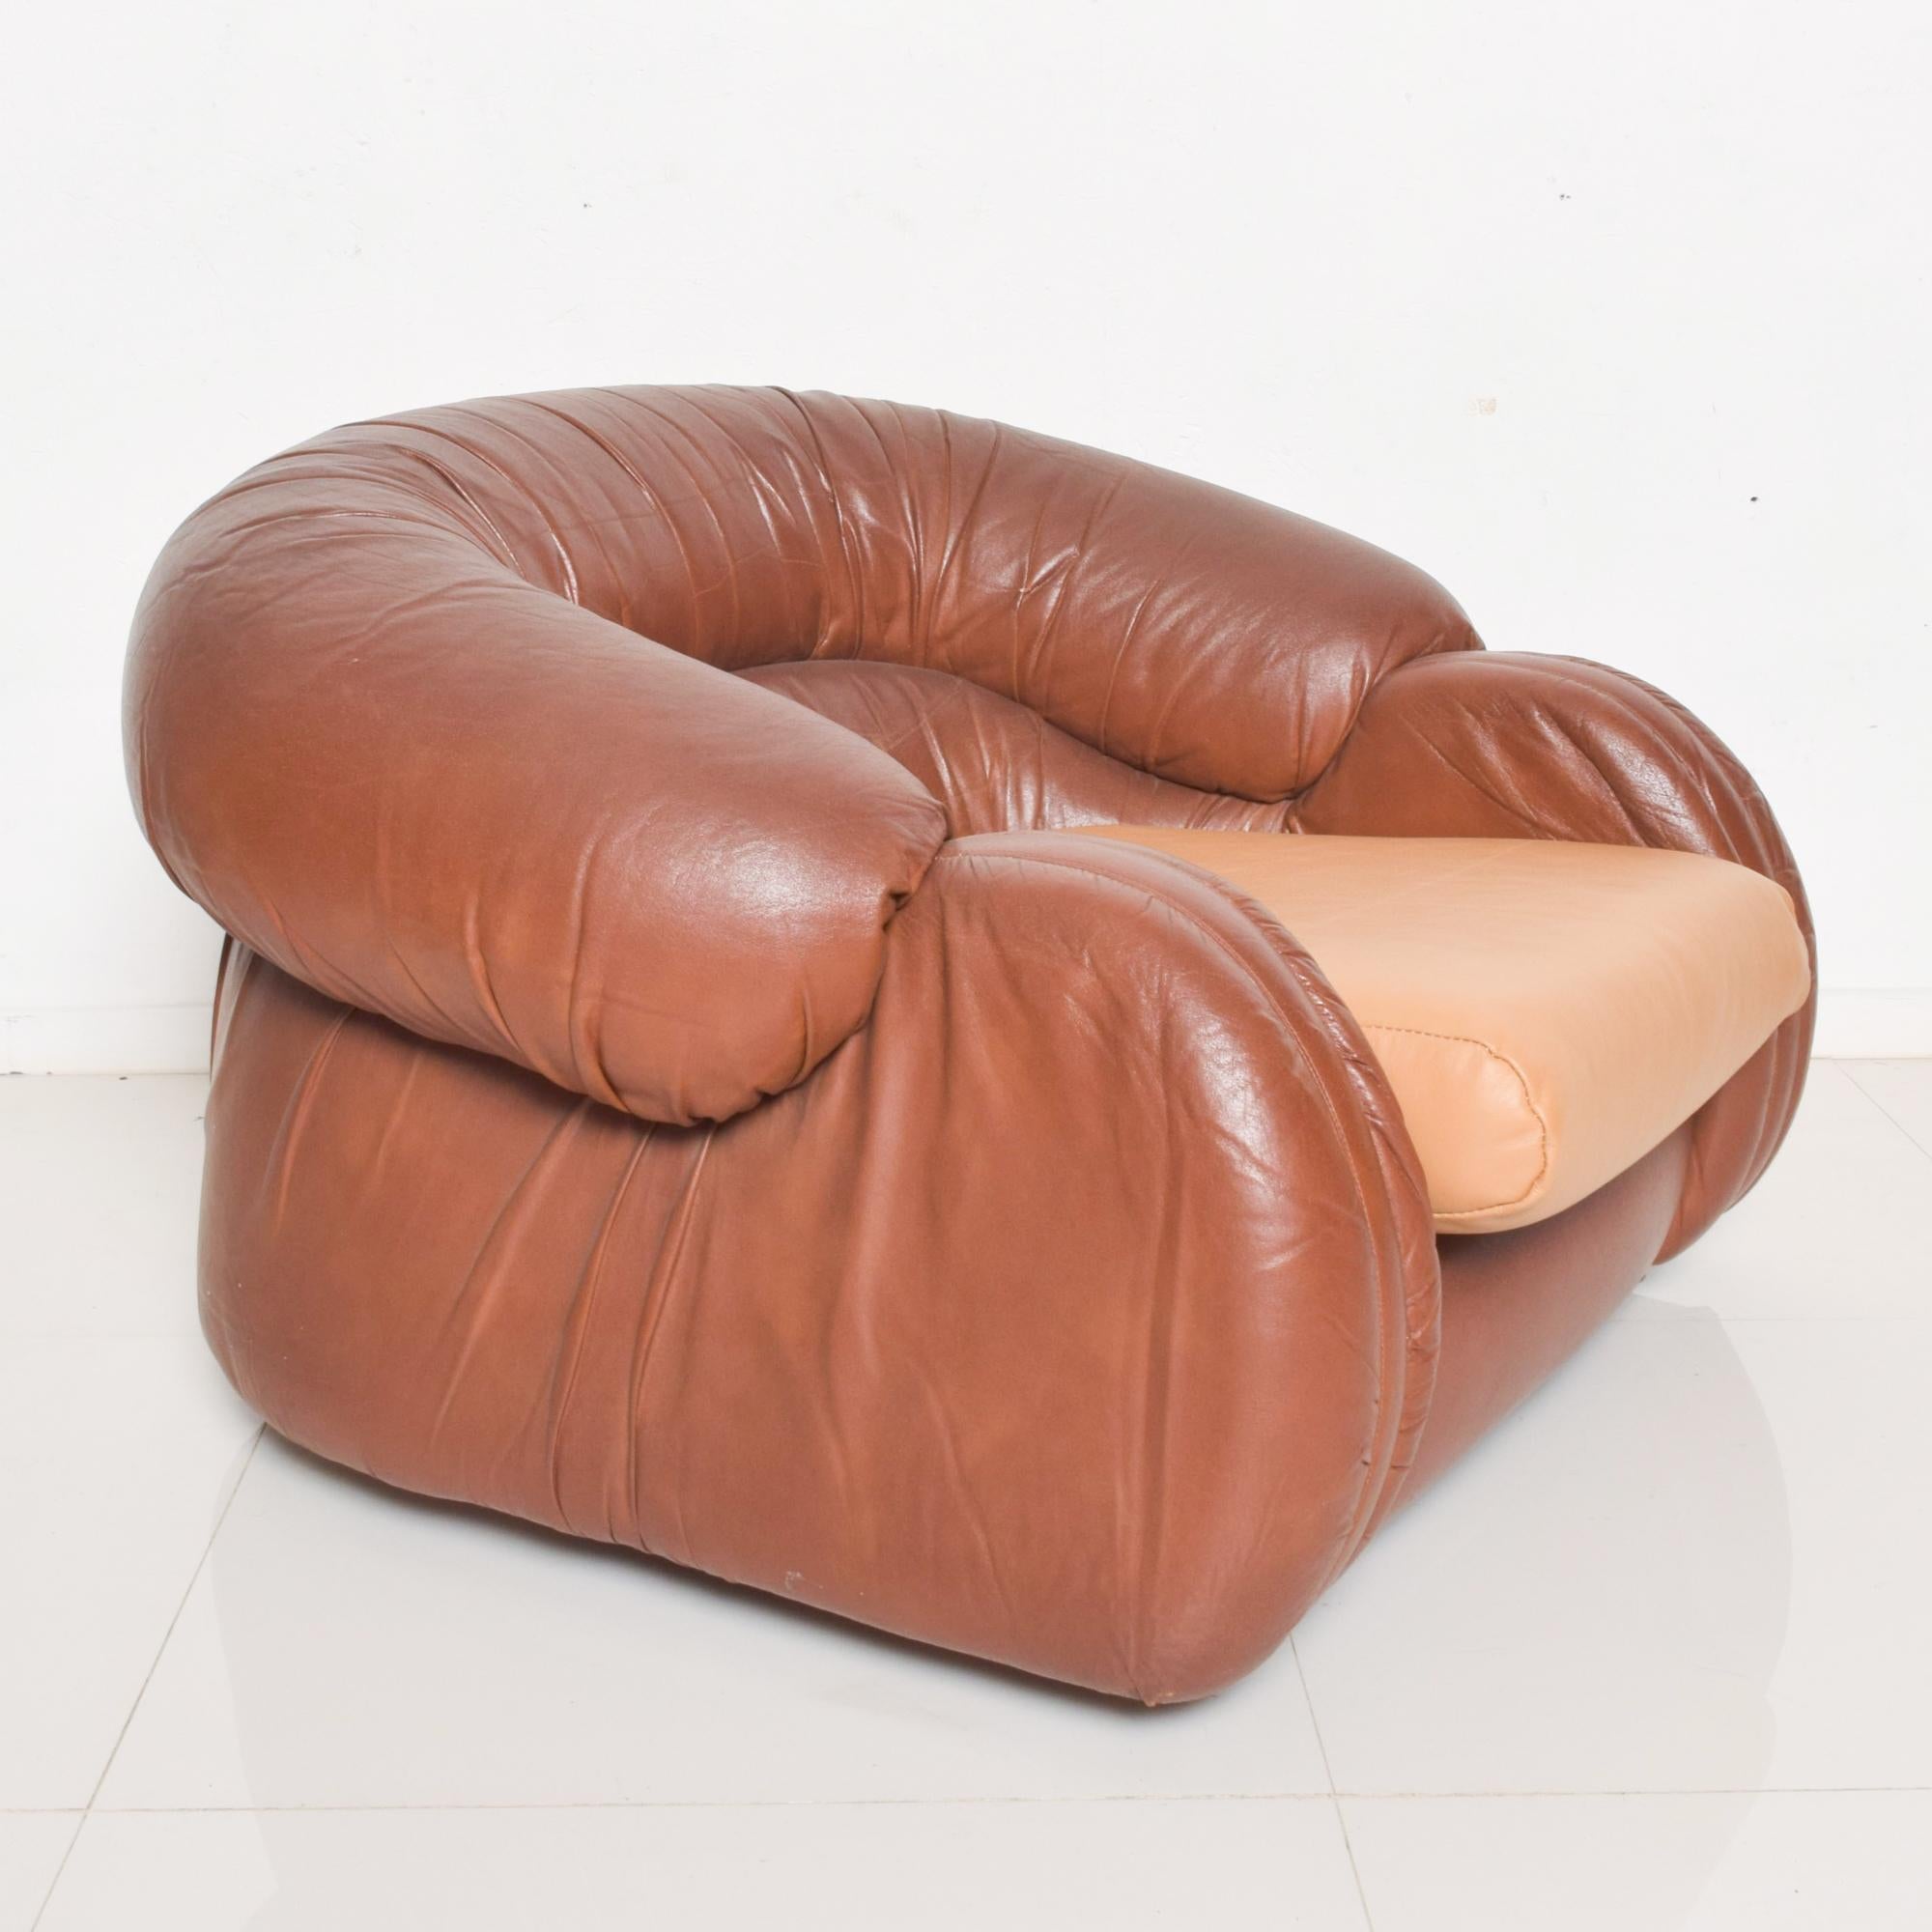 Sièges de salon bas
Fabuleuse chaise longue confortable en cuir bicolore Buttery Carmel par Giuseppe Munari pour Poltrona Munari Italie années 1960.
Style similaire à celui de De Sede. L'offre concerne la paire.
Dimensions : 39W x 36.5 D x 23H,